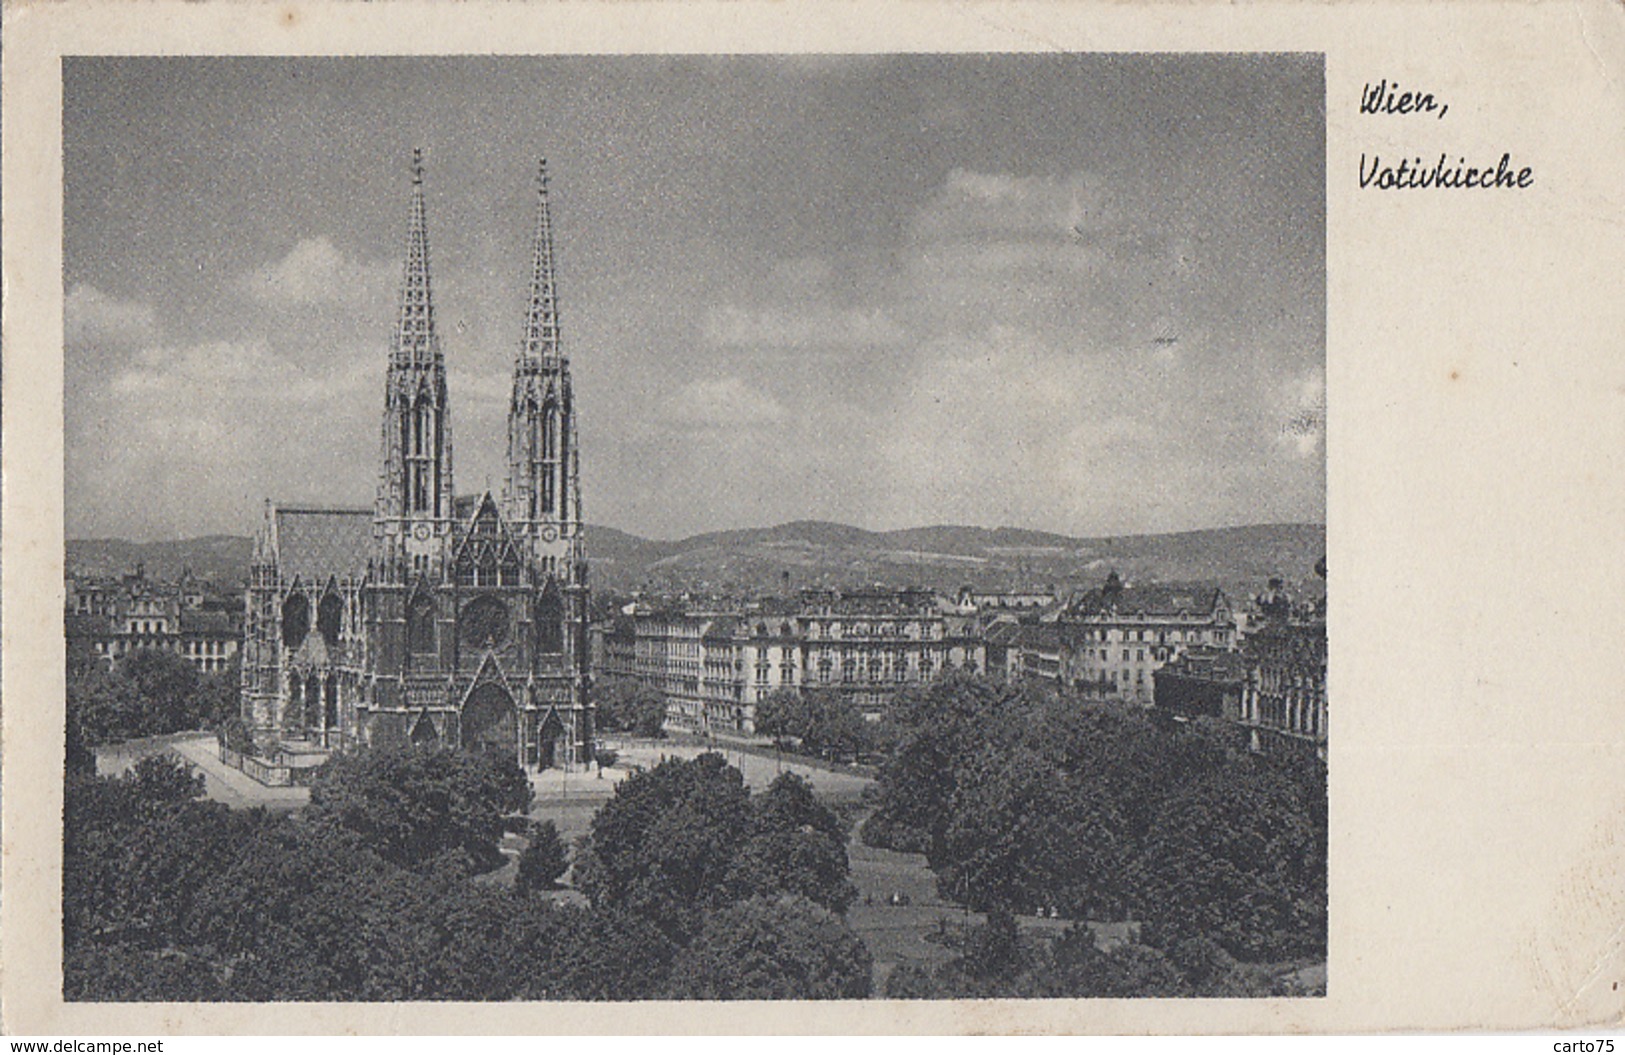 Autriche - Wien - Votivkirche - Postmarked Poste Aux Armées 1949 - Au Château Du Pré D'Auge La Boissière 14 - Chiese